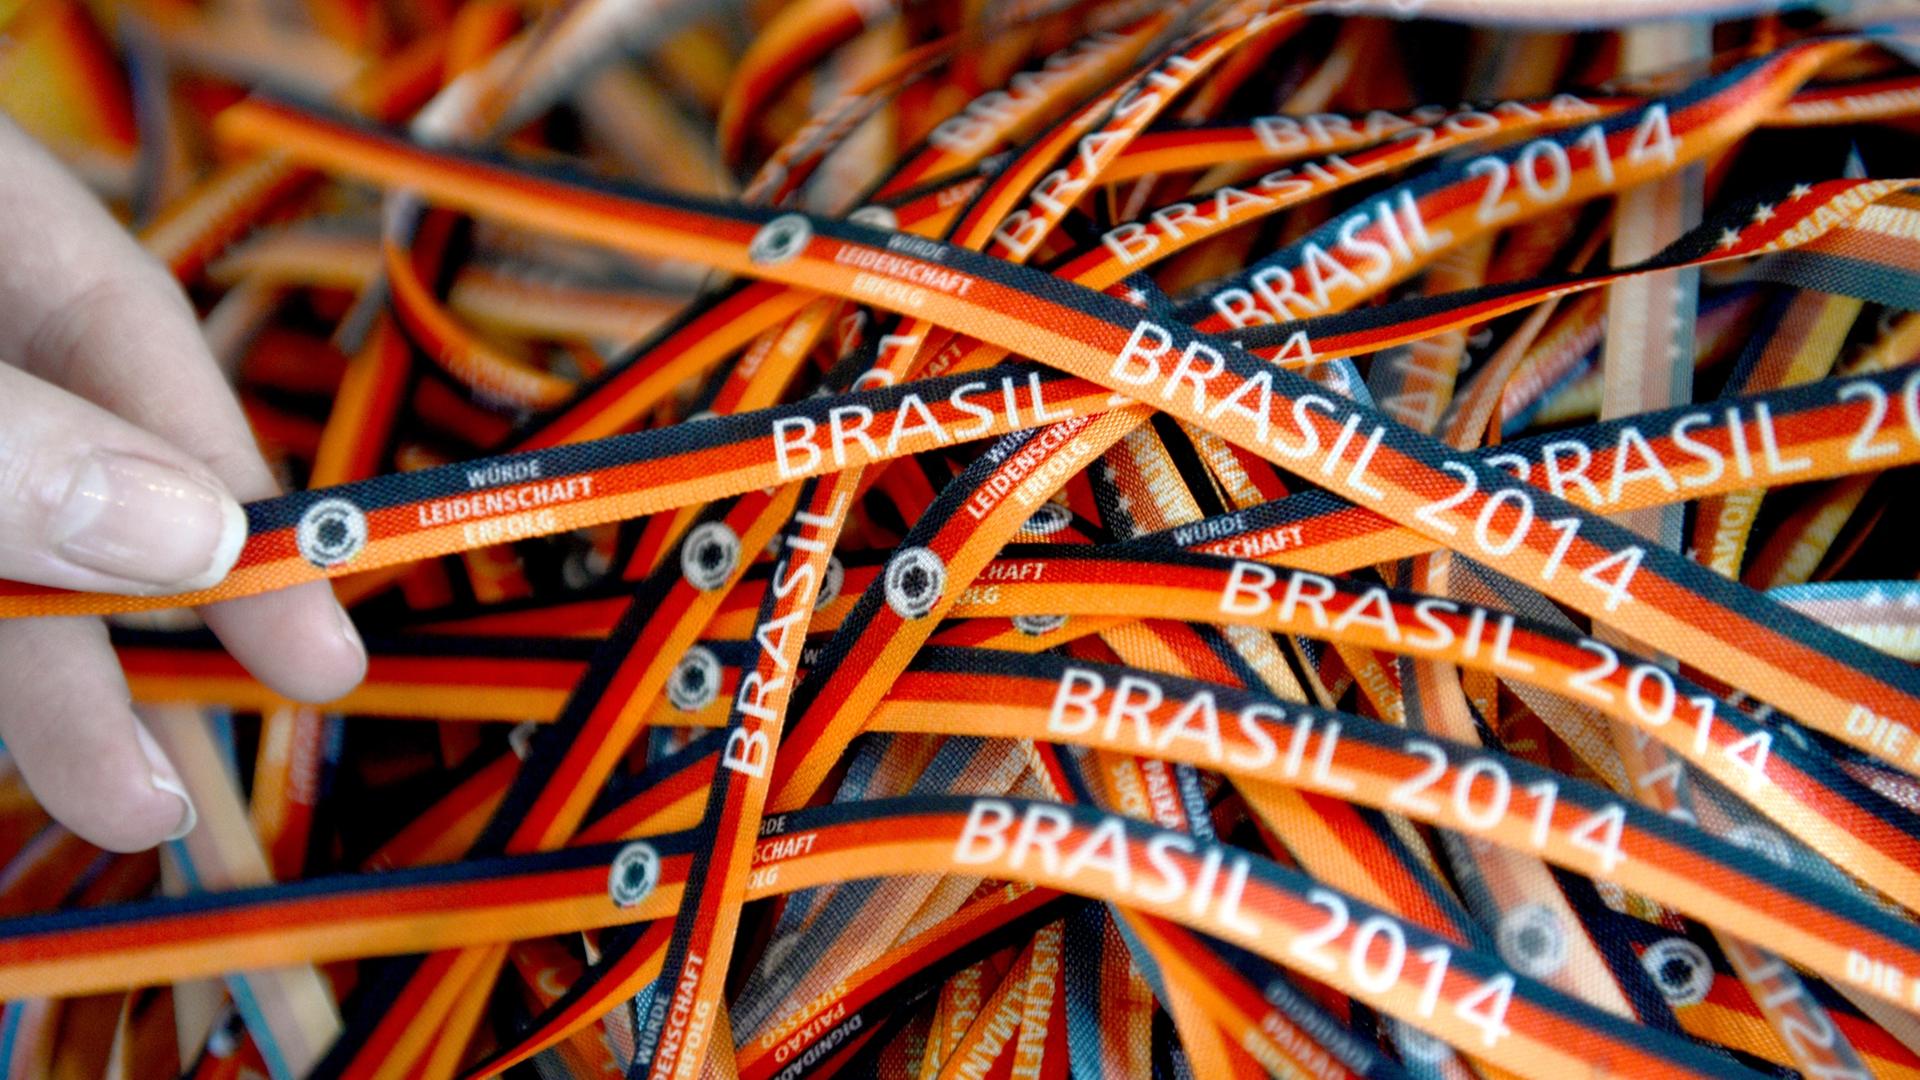 Brasilianische Glücksbändchen, Bonfim genannt, liegen am 08.05.2014 in der Zentrale des Deutschen Fußball-Bundes (DFB) in Frankfurt am Main (Hessen) am Rande einer Pressekonferenz auf einem Tisch. Die Fußball-WM 2014 findet vom 12. Juni bis 13. Juli in Br